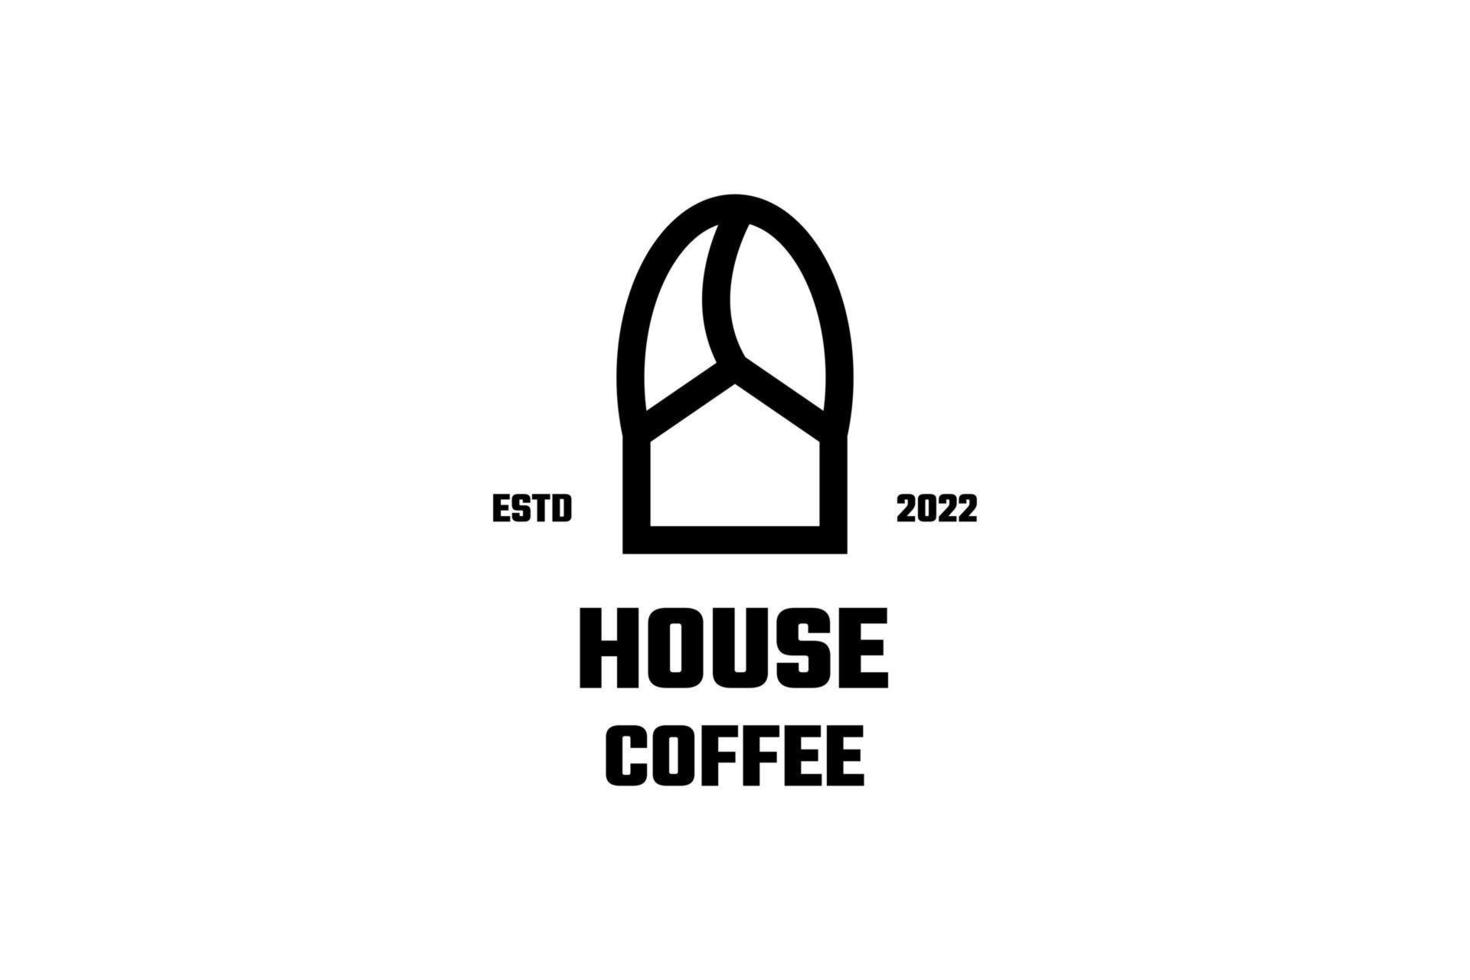 vettore di design del logo della caffetteria